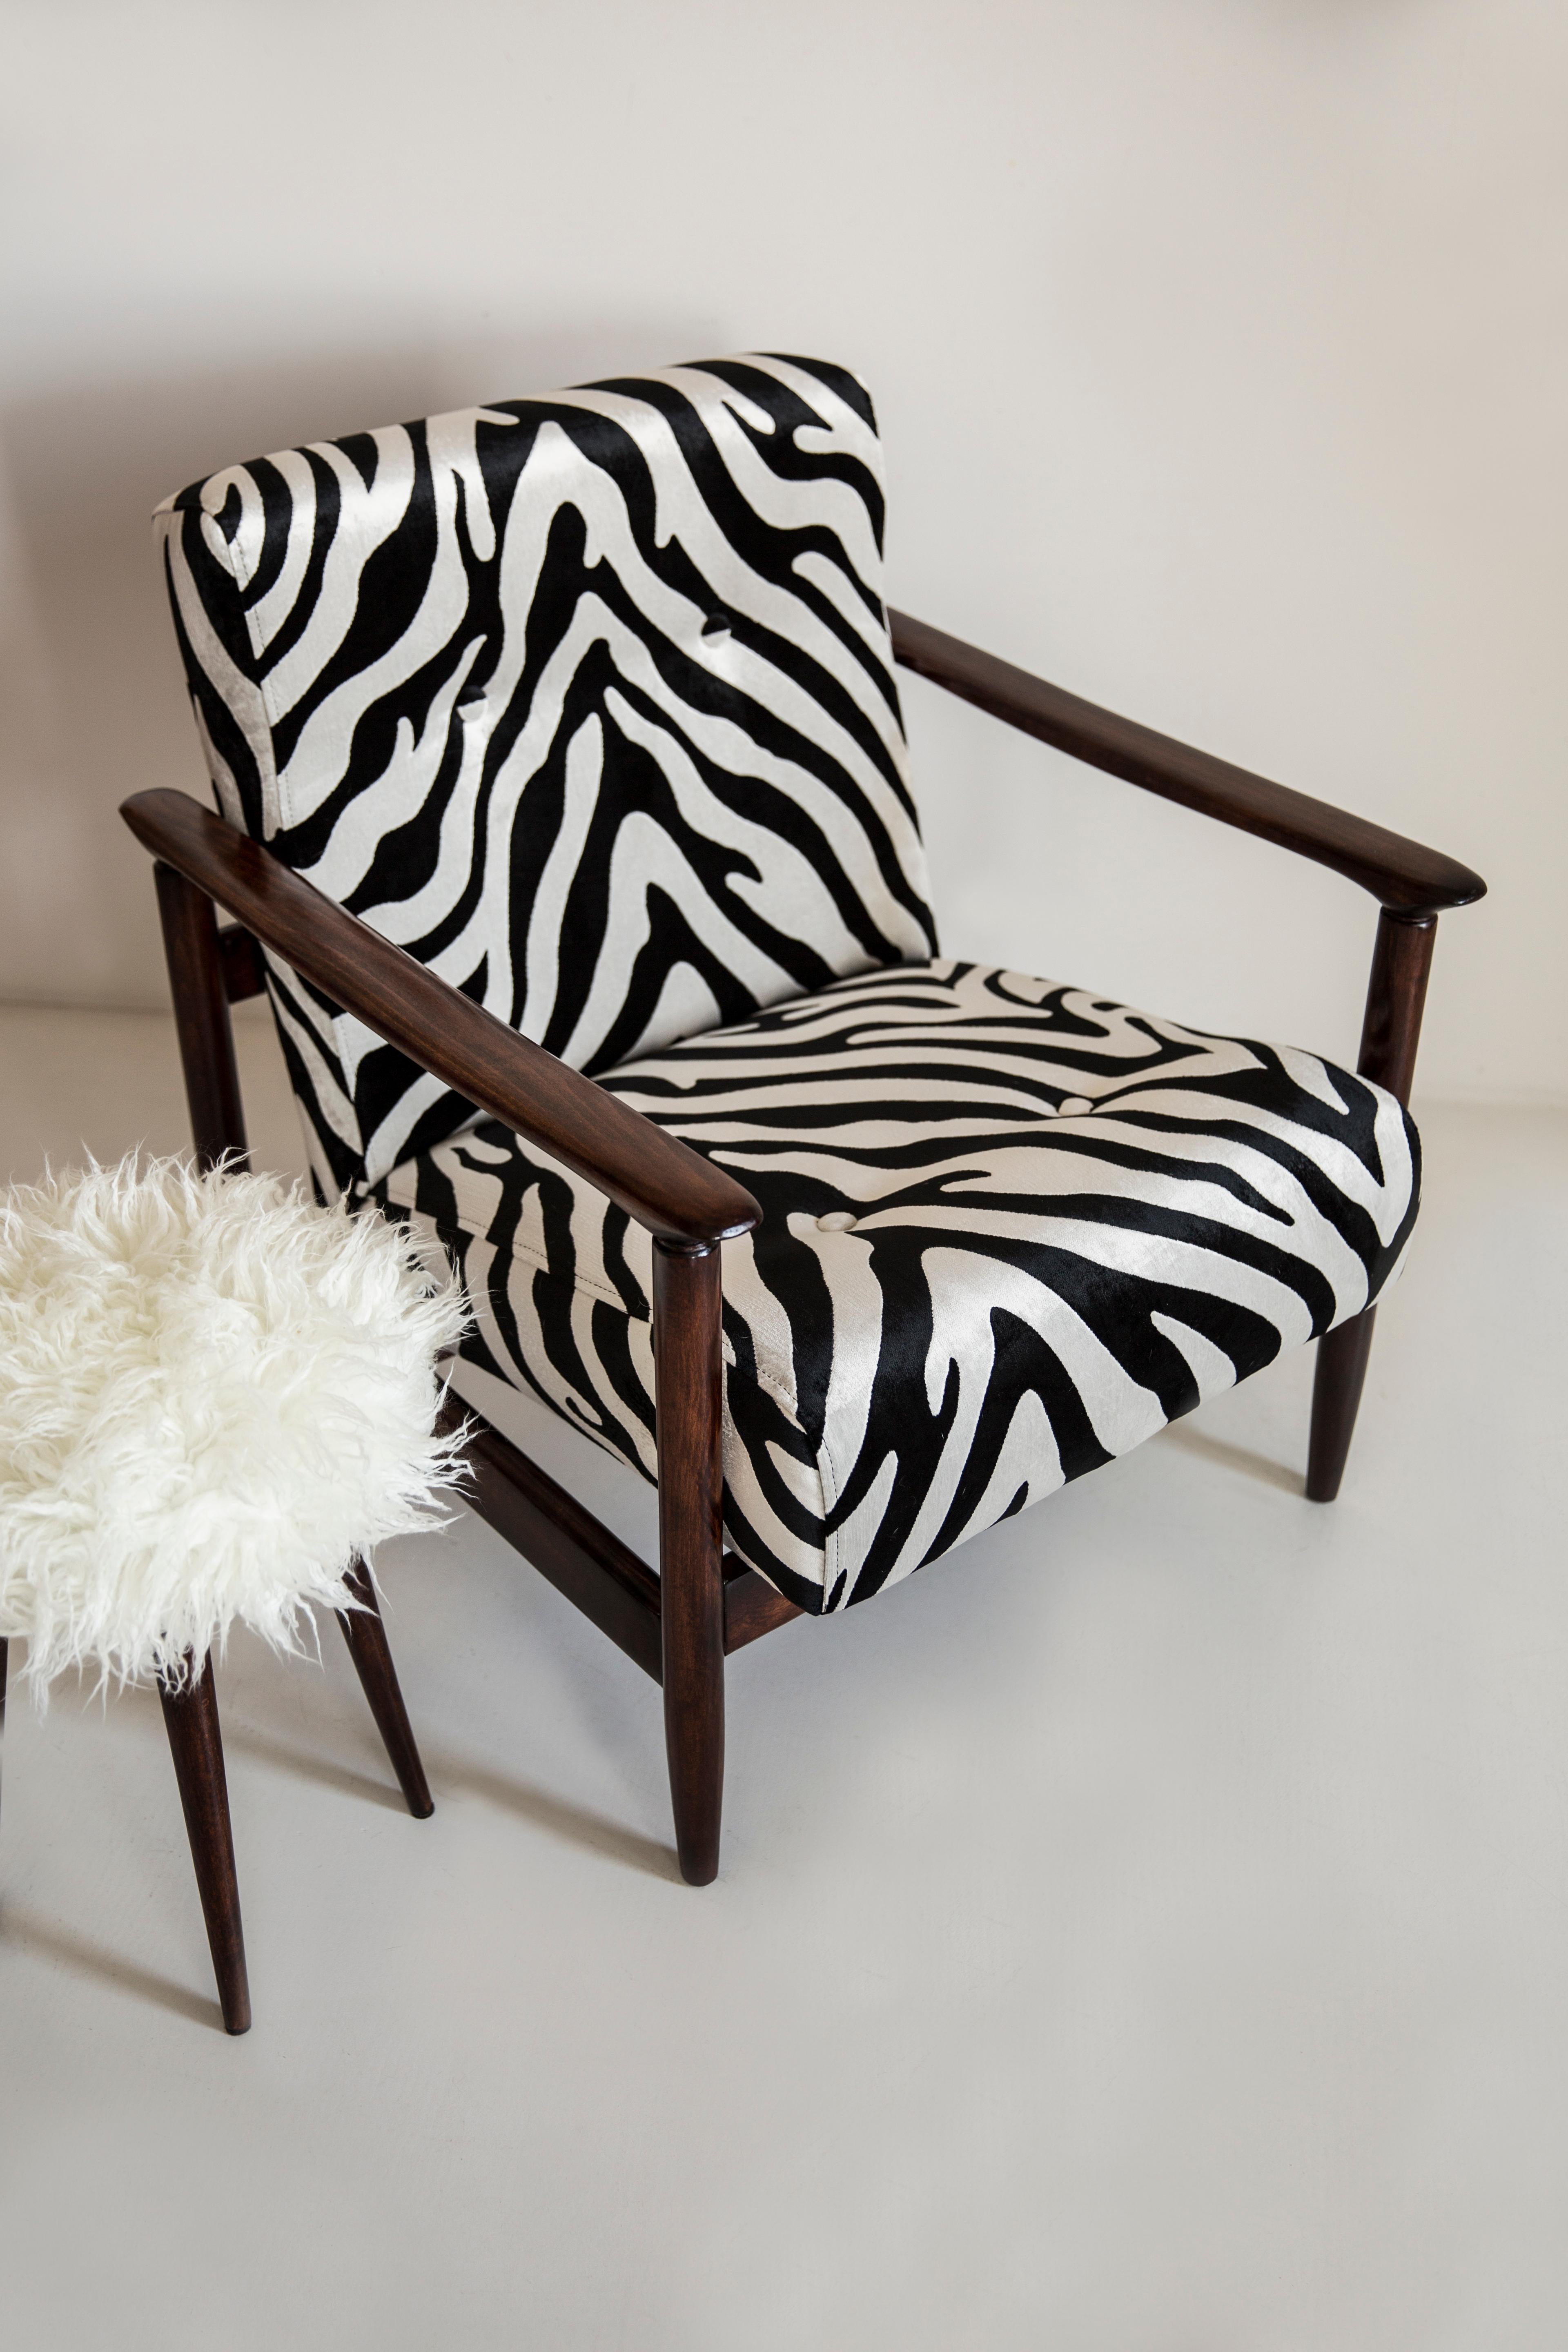 Wunderschöner Zebra-Samtsessel GFM-142, entworfen von Edmund Homa, einem polnischen Architekten, Designer von Industriedesign und Innenarchitektur, Professor an der Akademie der Schönen Künste in Danzig. 

Der Sessel wurde in den 1960er Jahren in